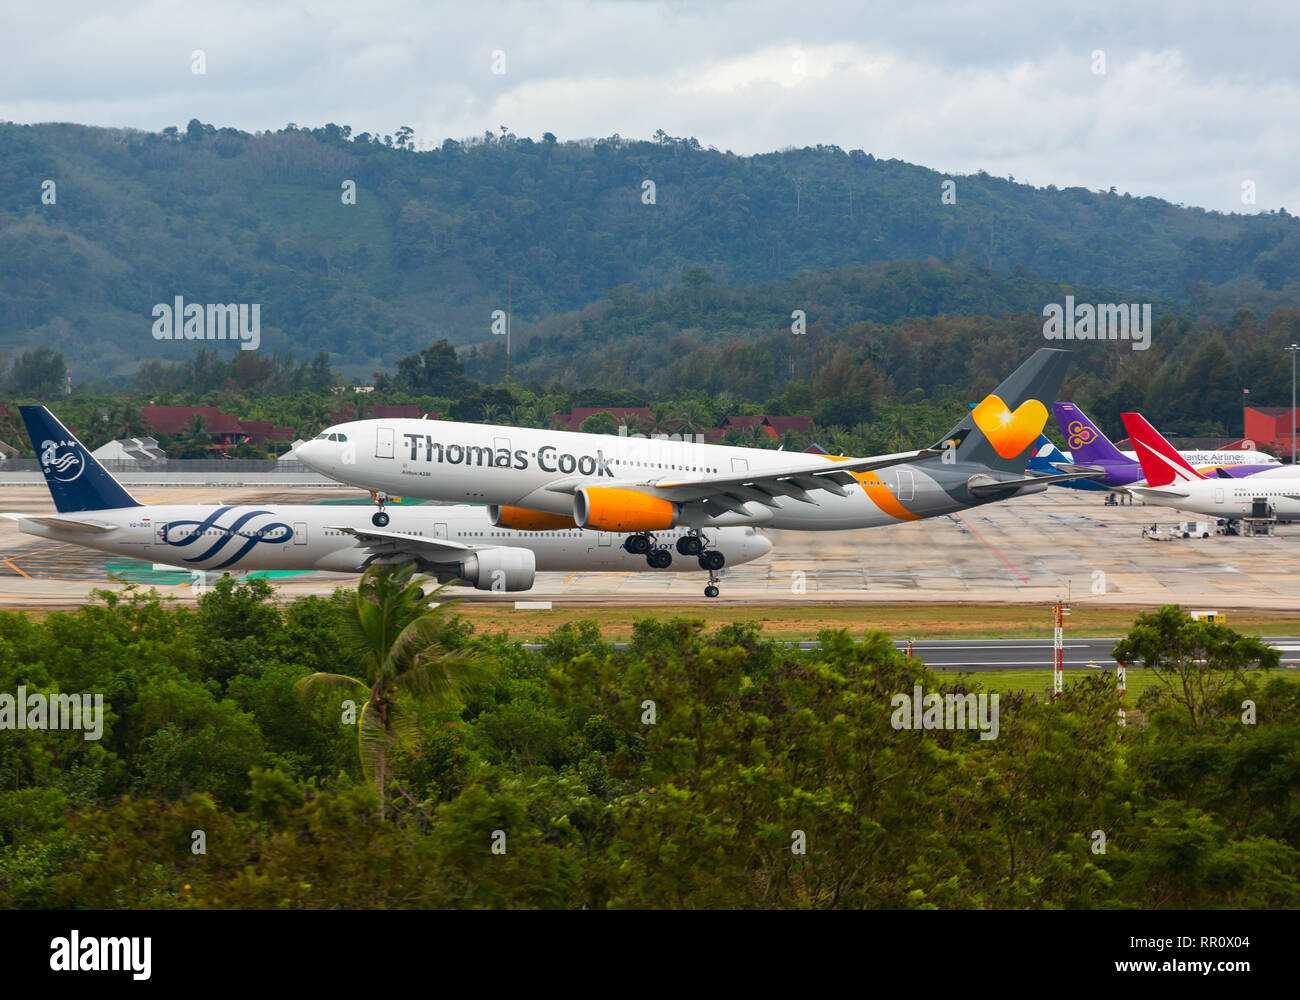 Thomas Cook lands at Phuket airport Stock Photo